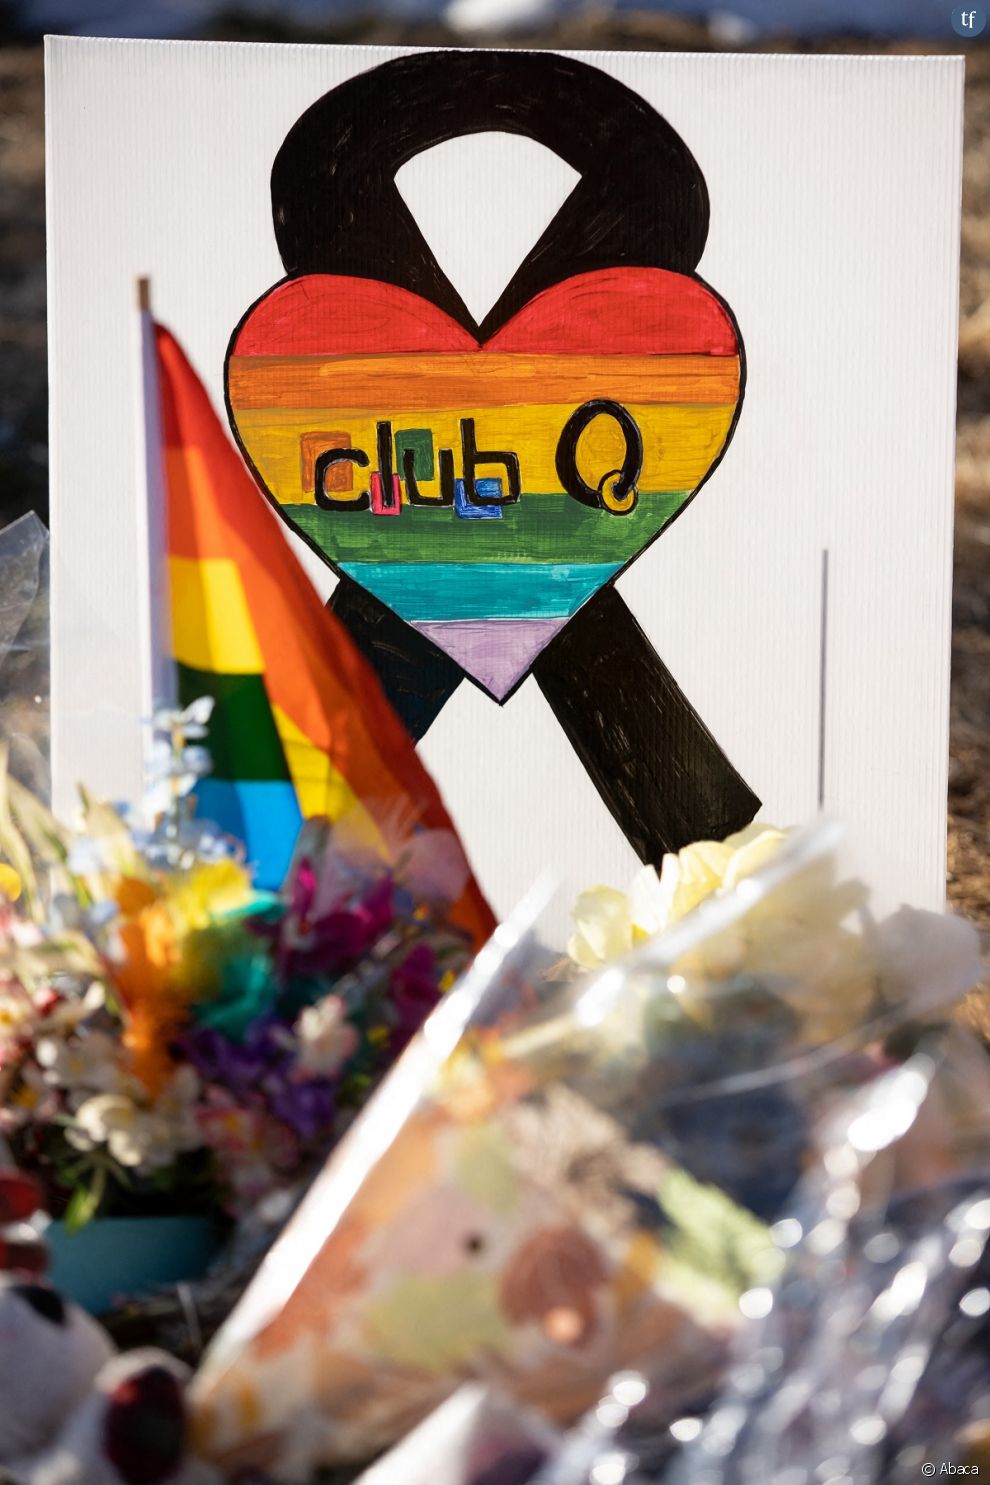 5 morts et 18 blessés, c&#039;est le tragique bilan de la fusillade qui a pris place dans une discothèque LGBTQ+ dans le Colorado le 20 novembre, le &quot;Club Q&quot;.